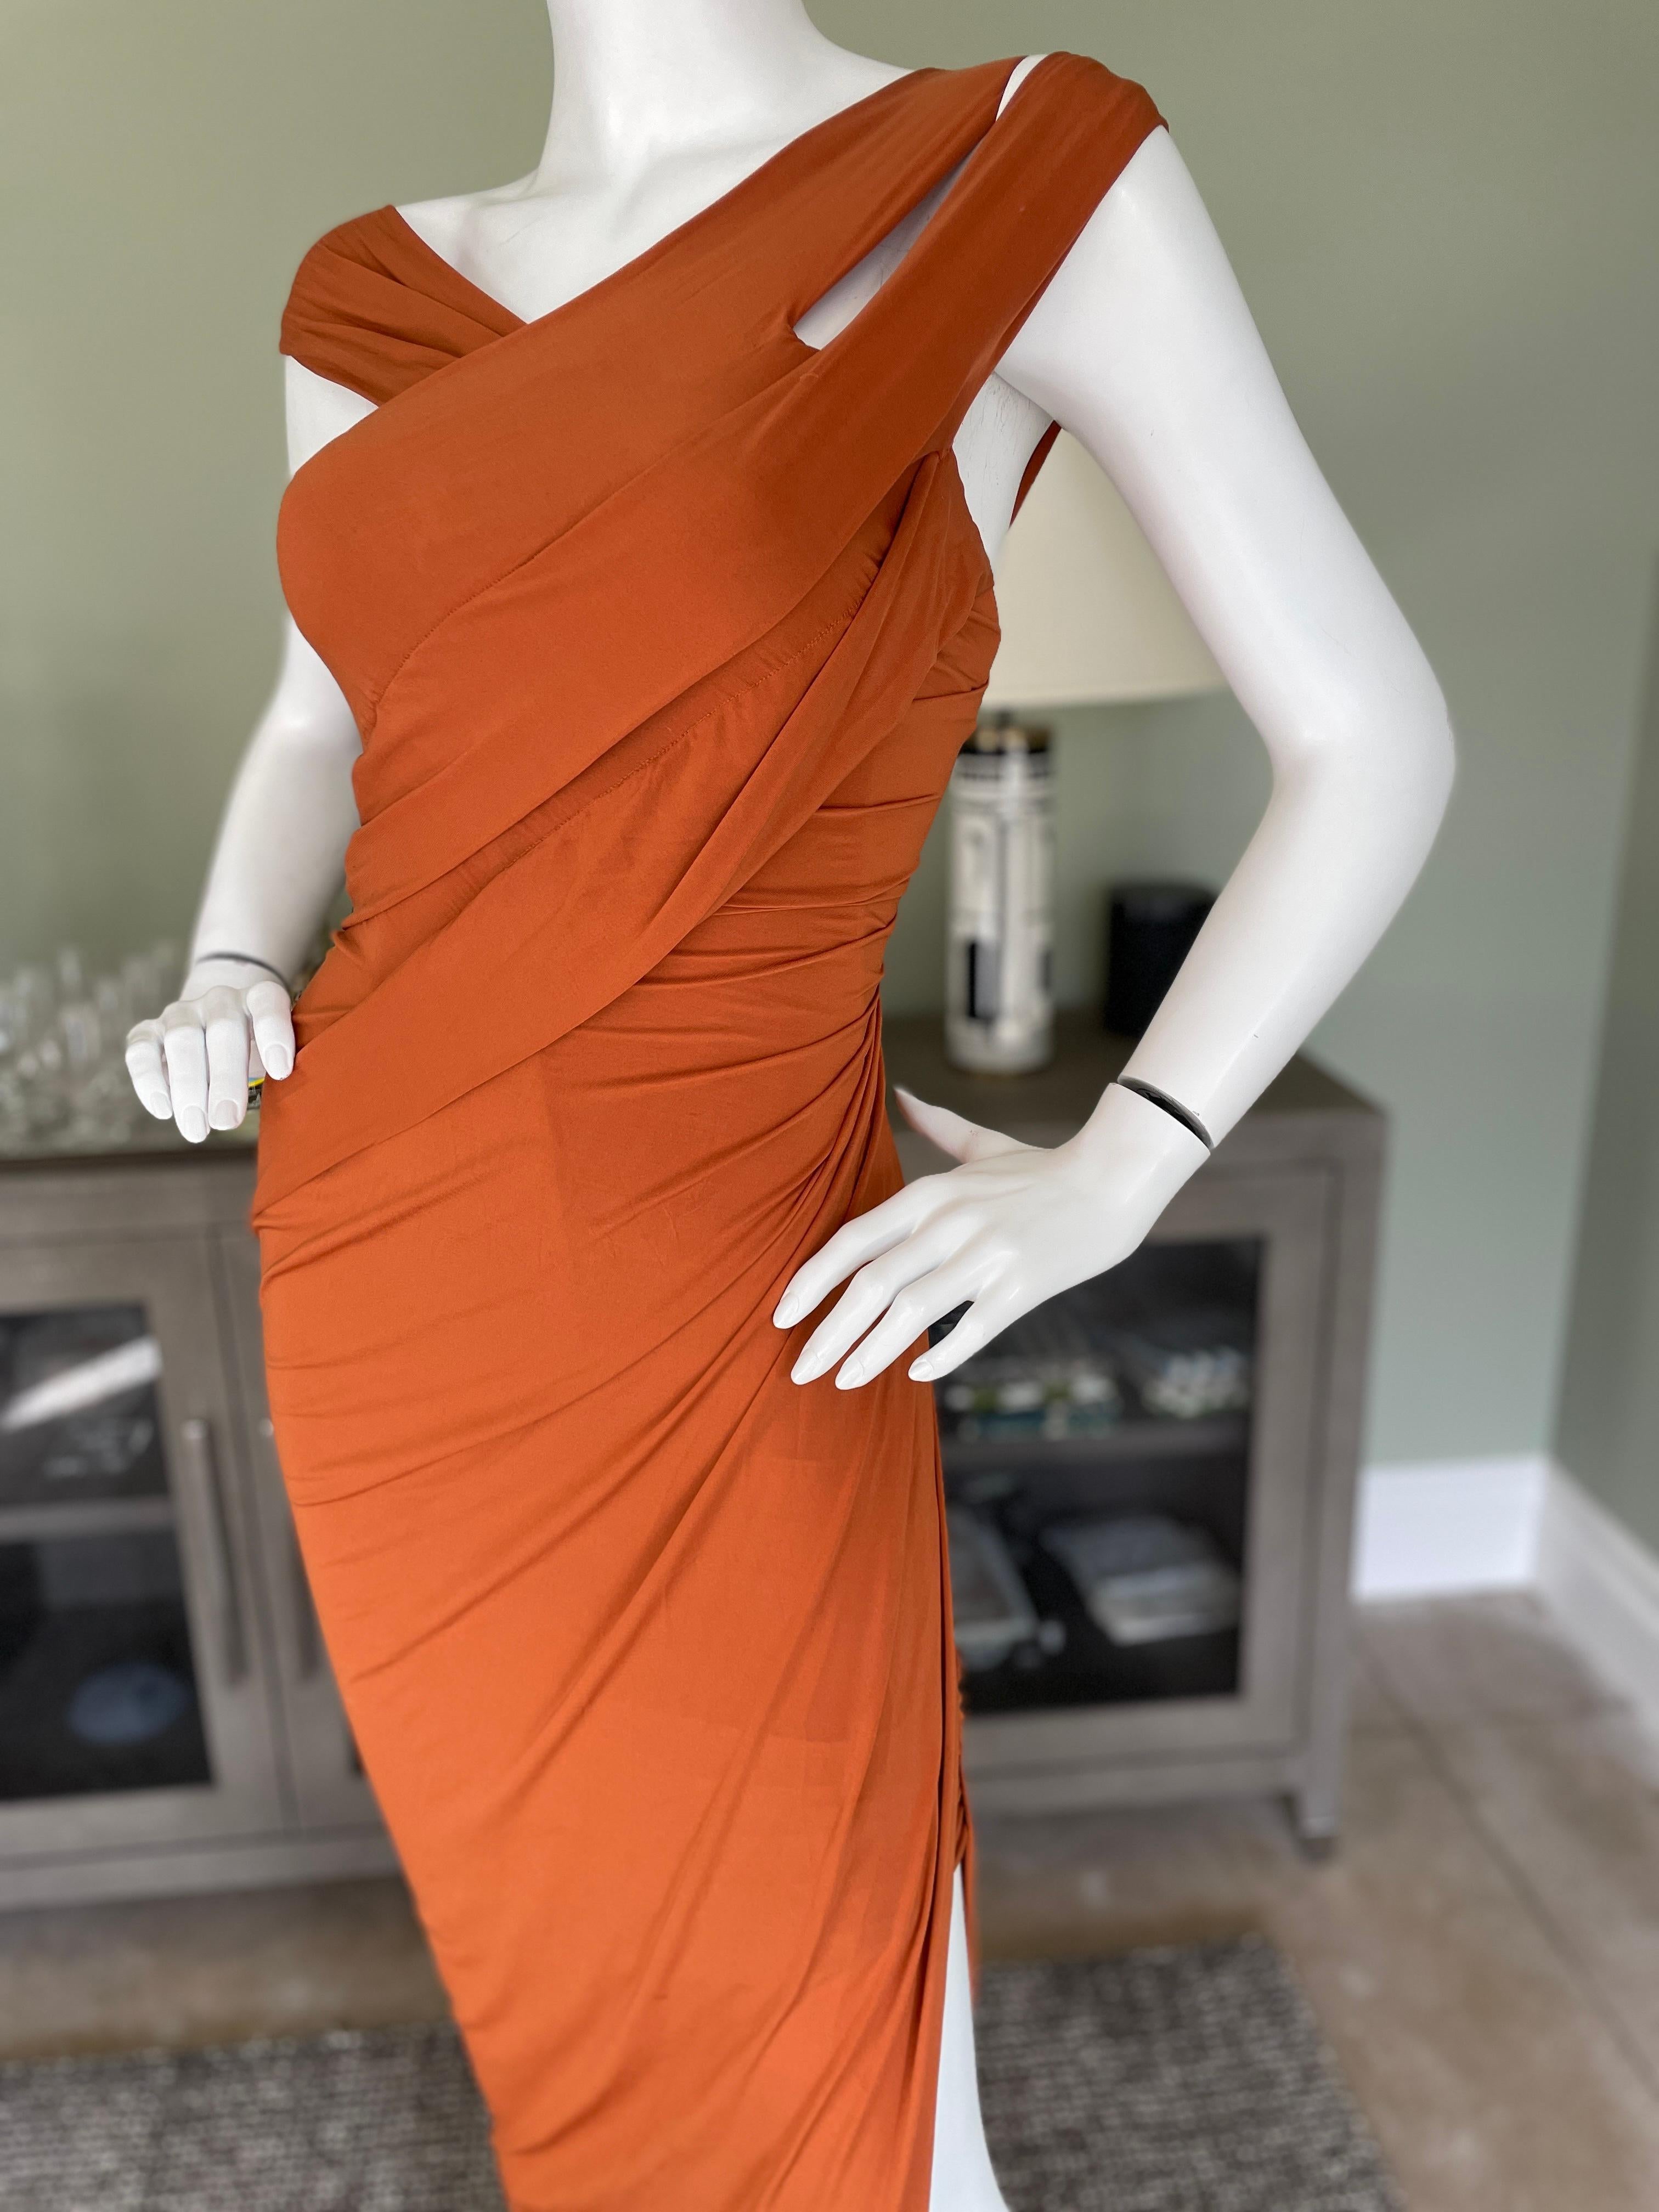 Donna Karan Vintage 1990's Orange Evening Dress with High Side Slit   For Sale 1